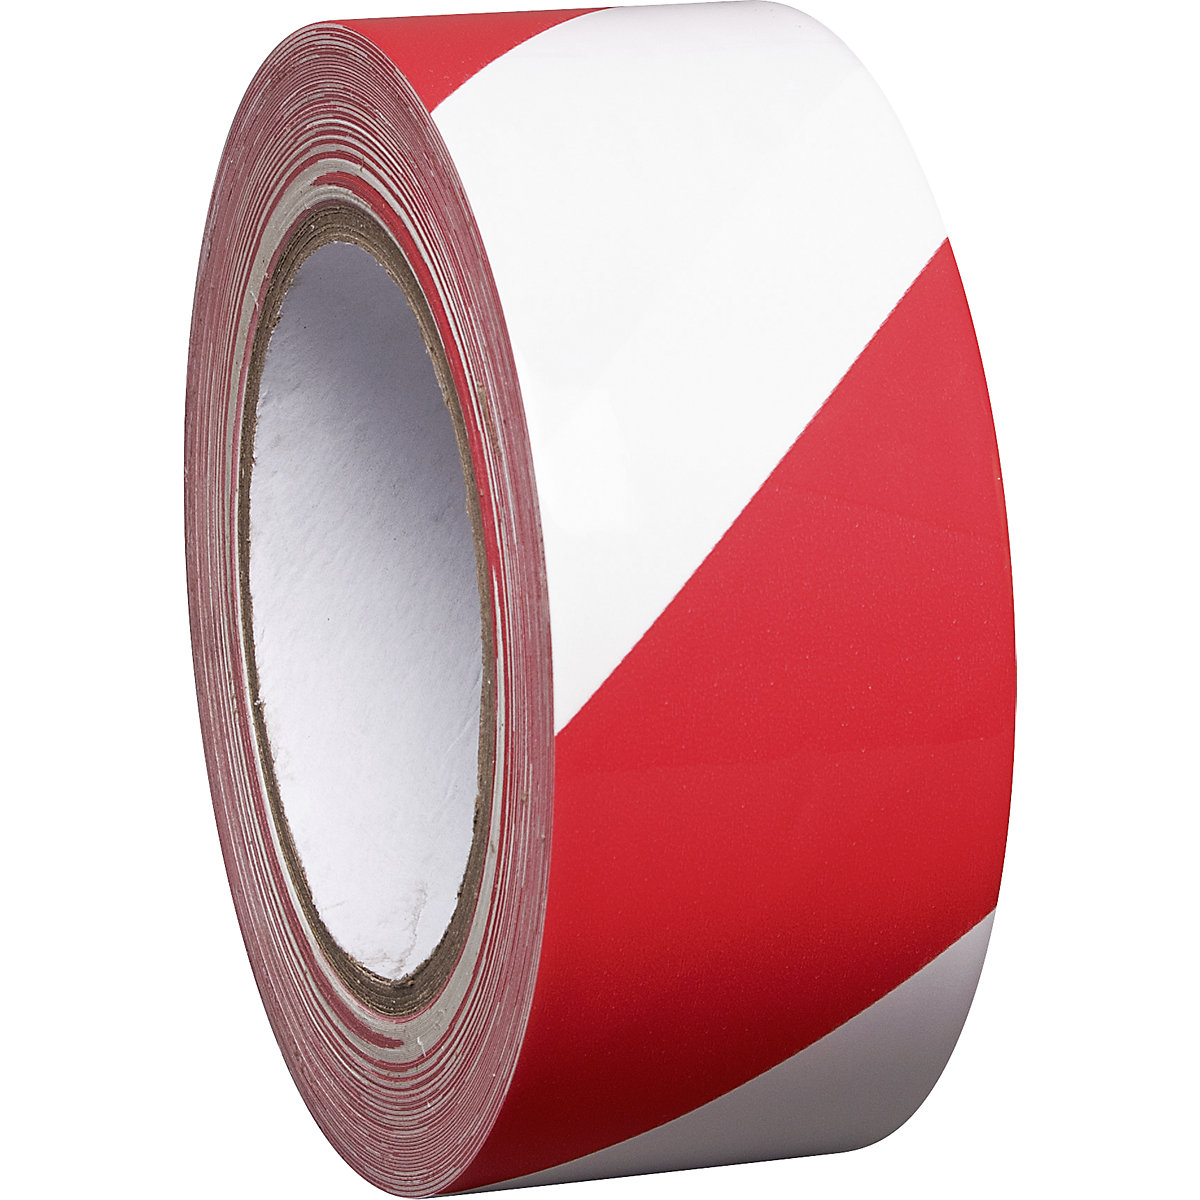 Bodenmarkierungsband aus Vinyl, zweifarbig, Breite 50 mm, rot / weiß, VE 8 Rollen-2